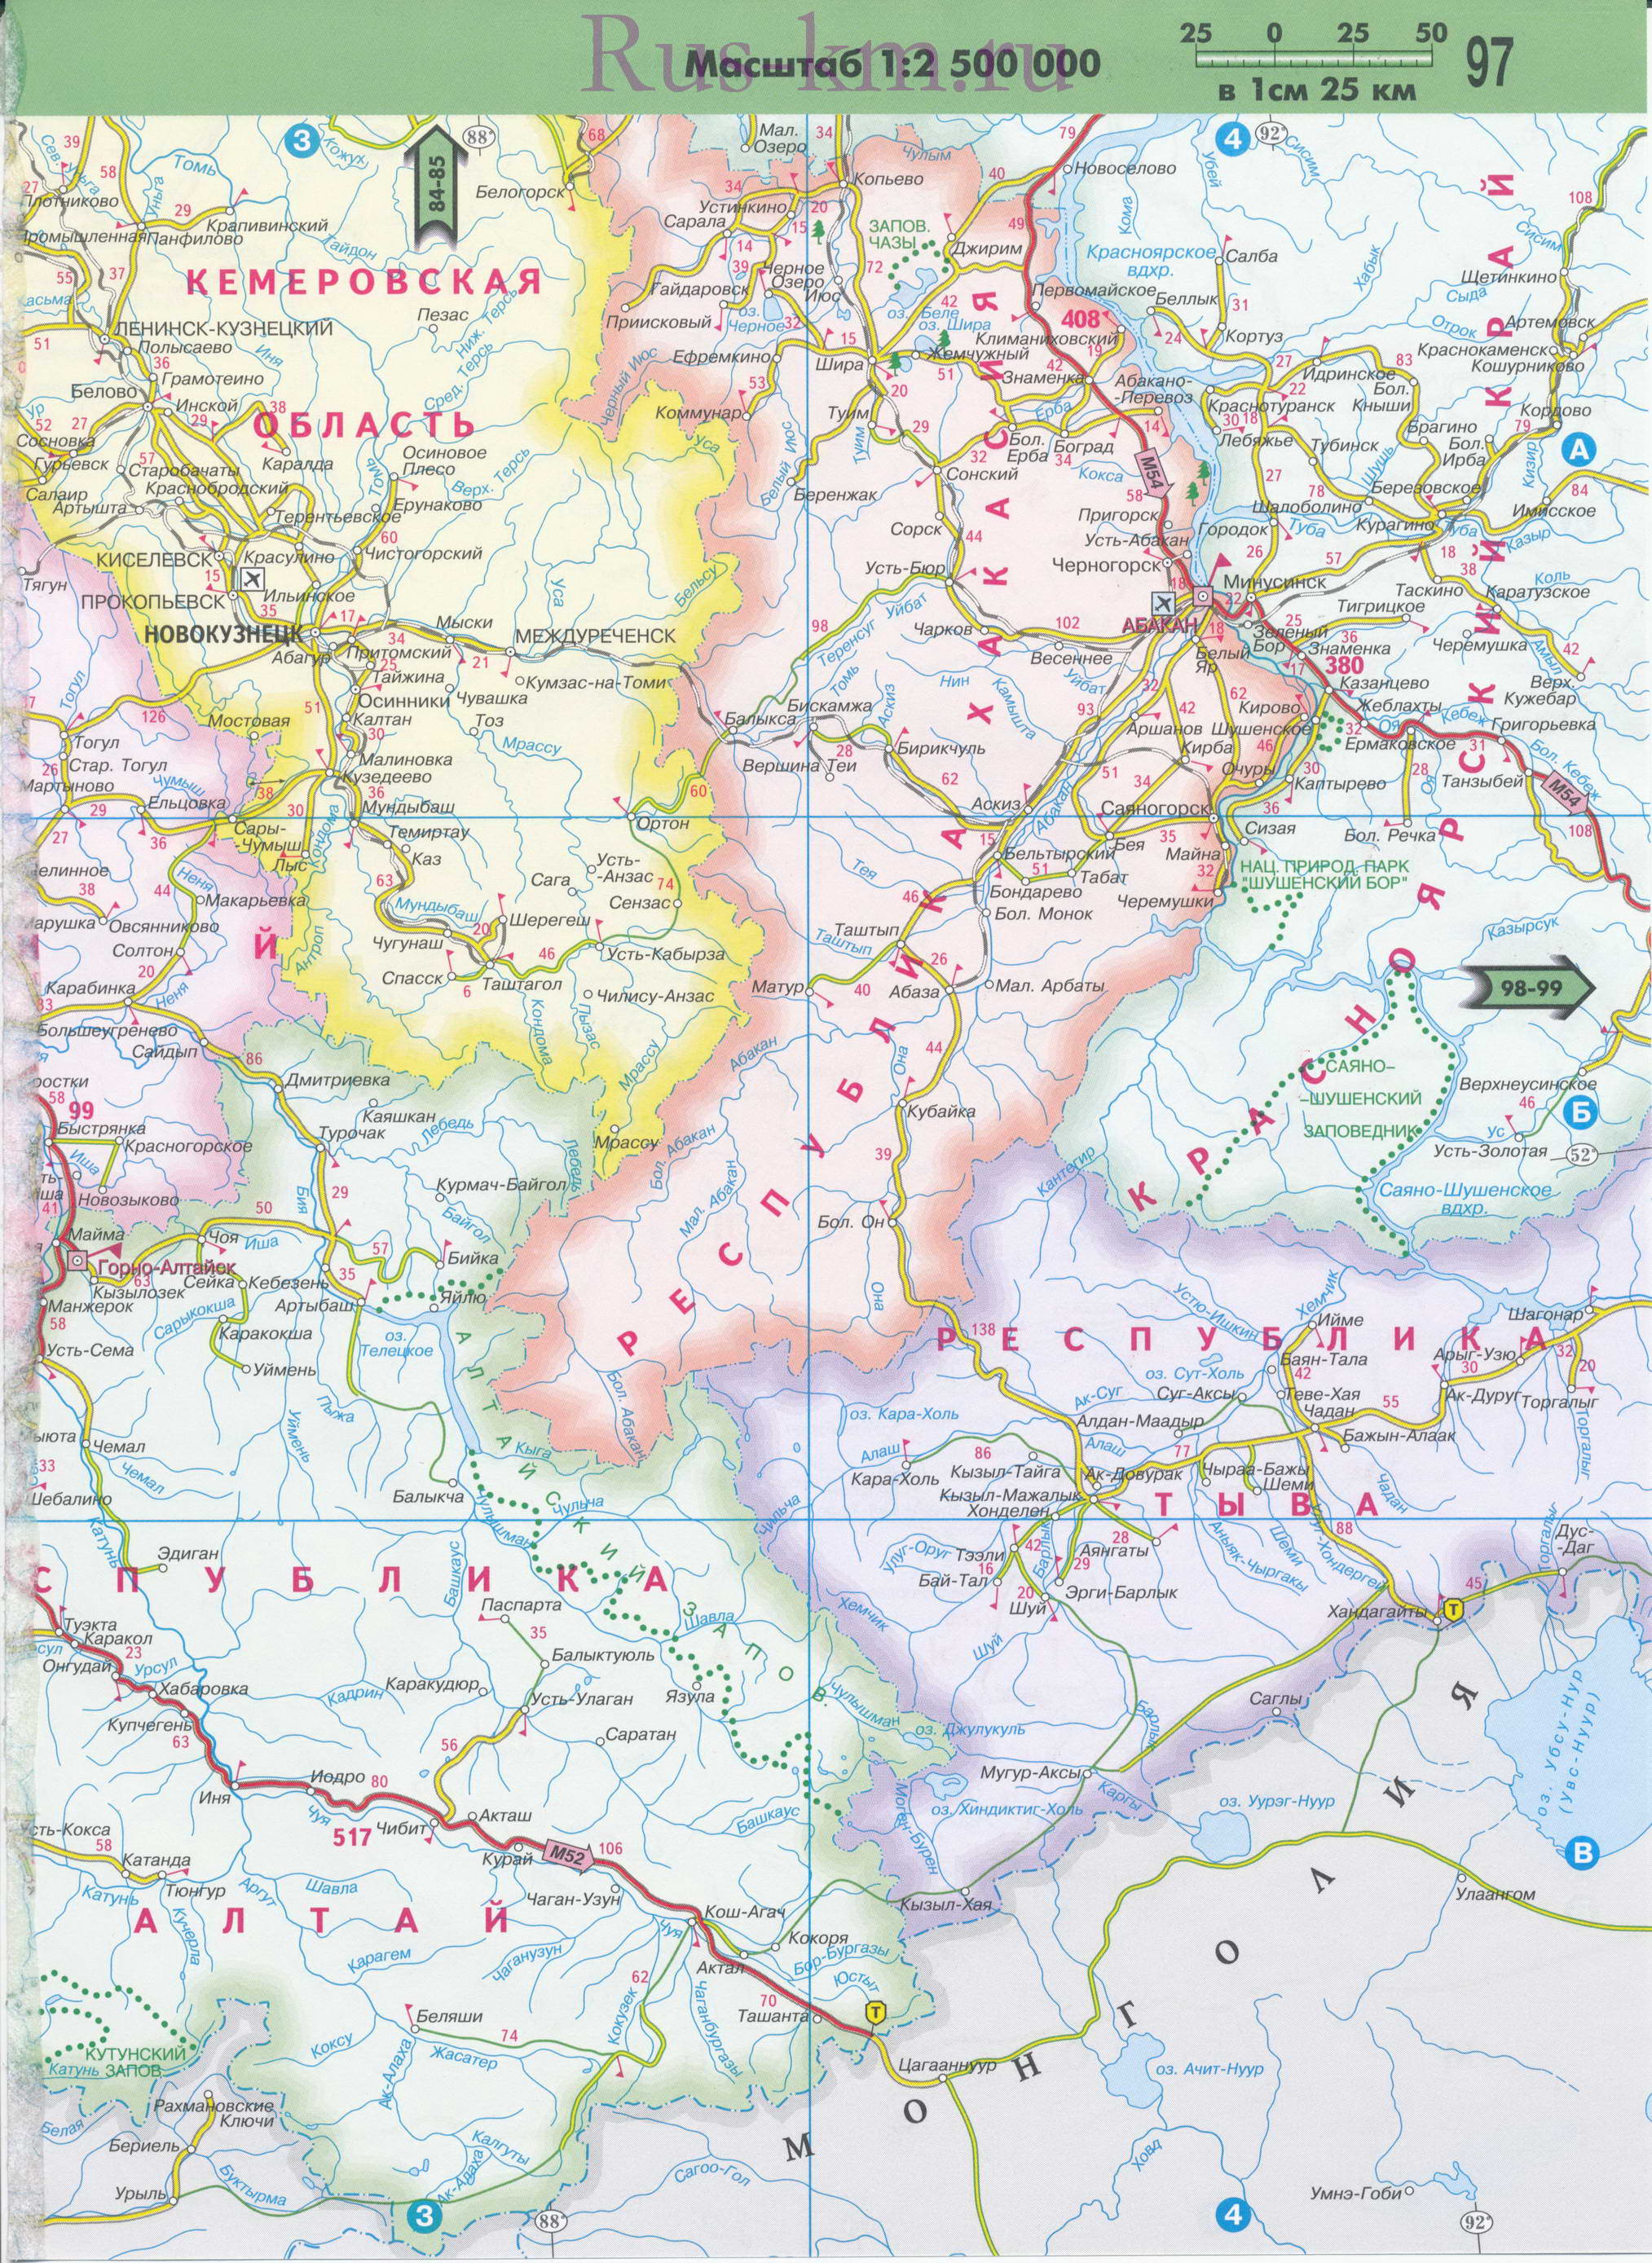 Карта дорог Западной Сибири до Байкала. Подробная карта автодорог Западной Сибири до озера Байкал, B1 - 